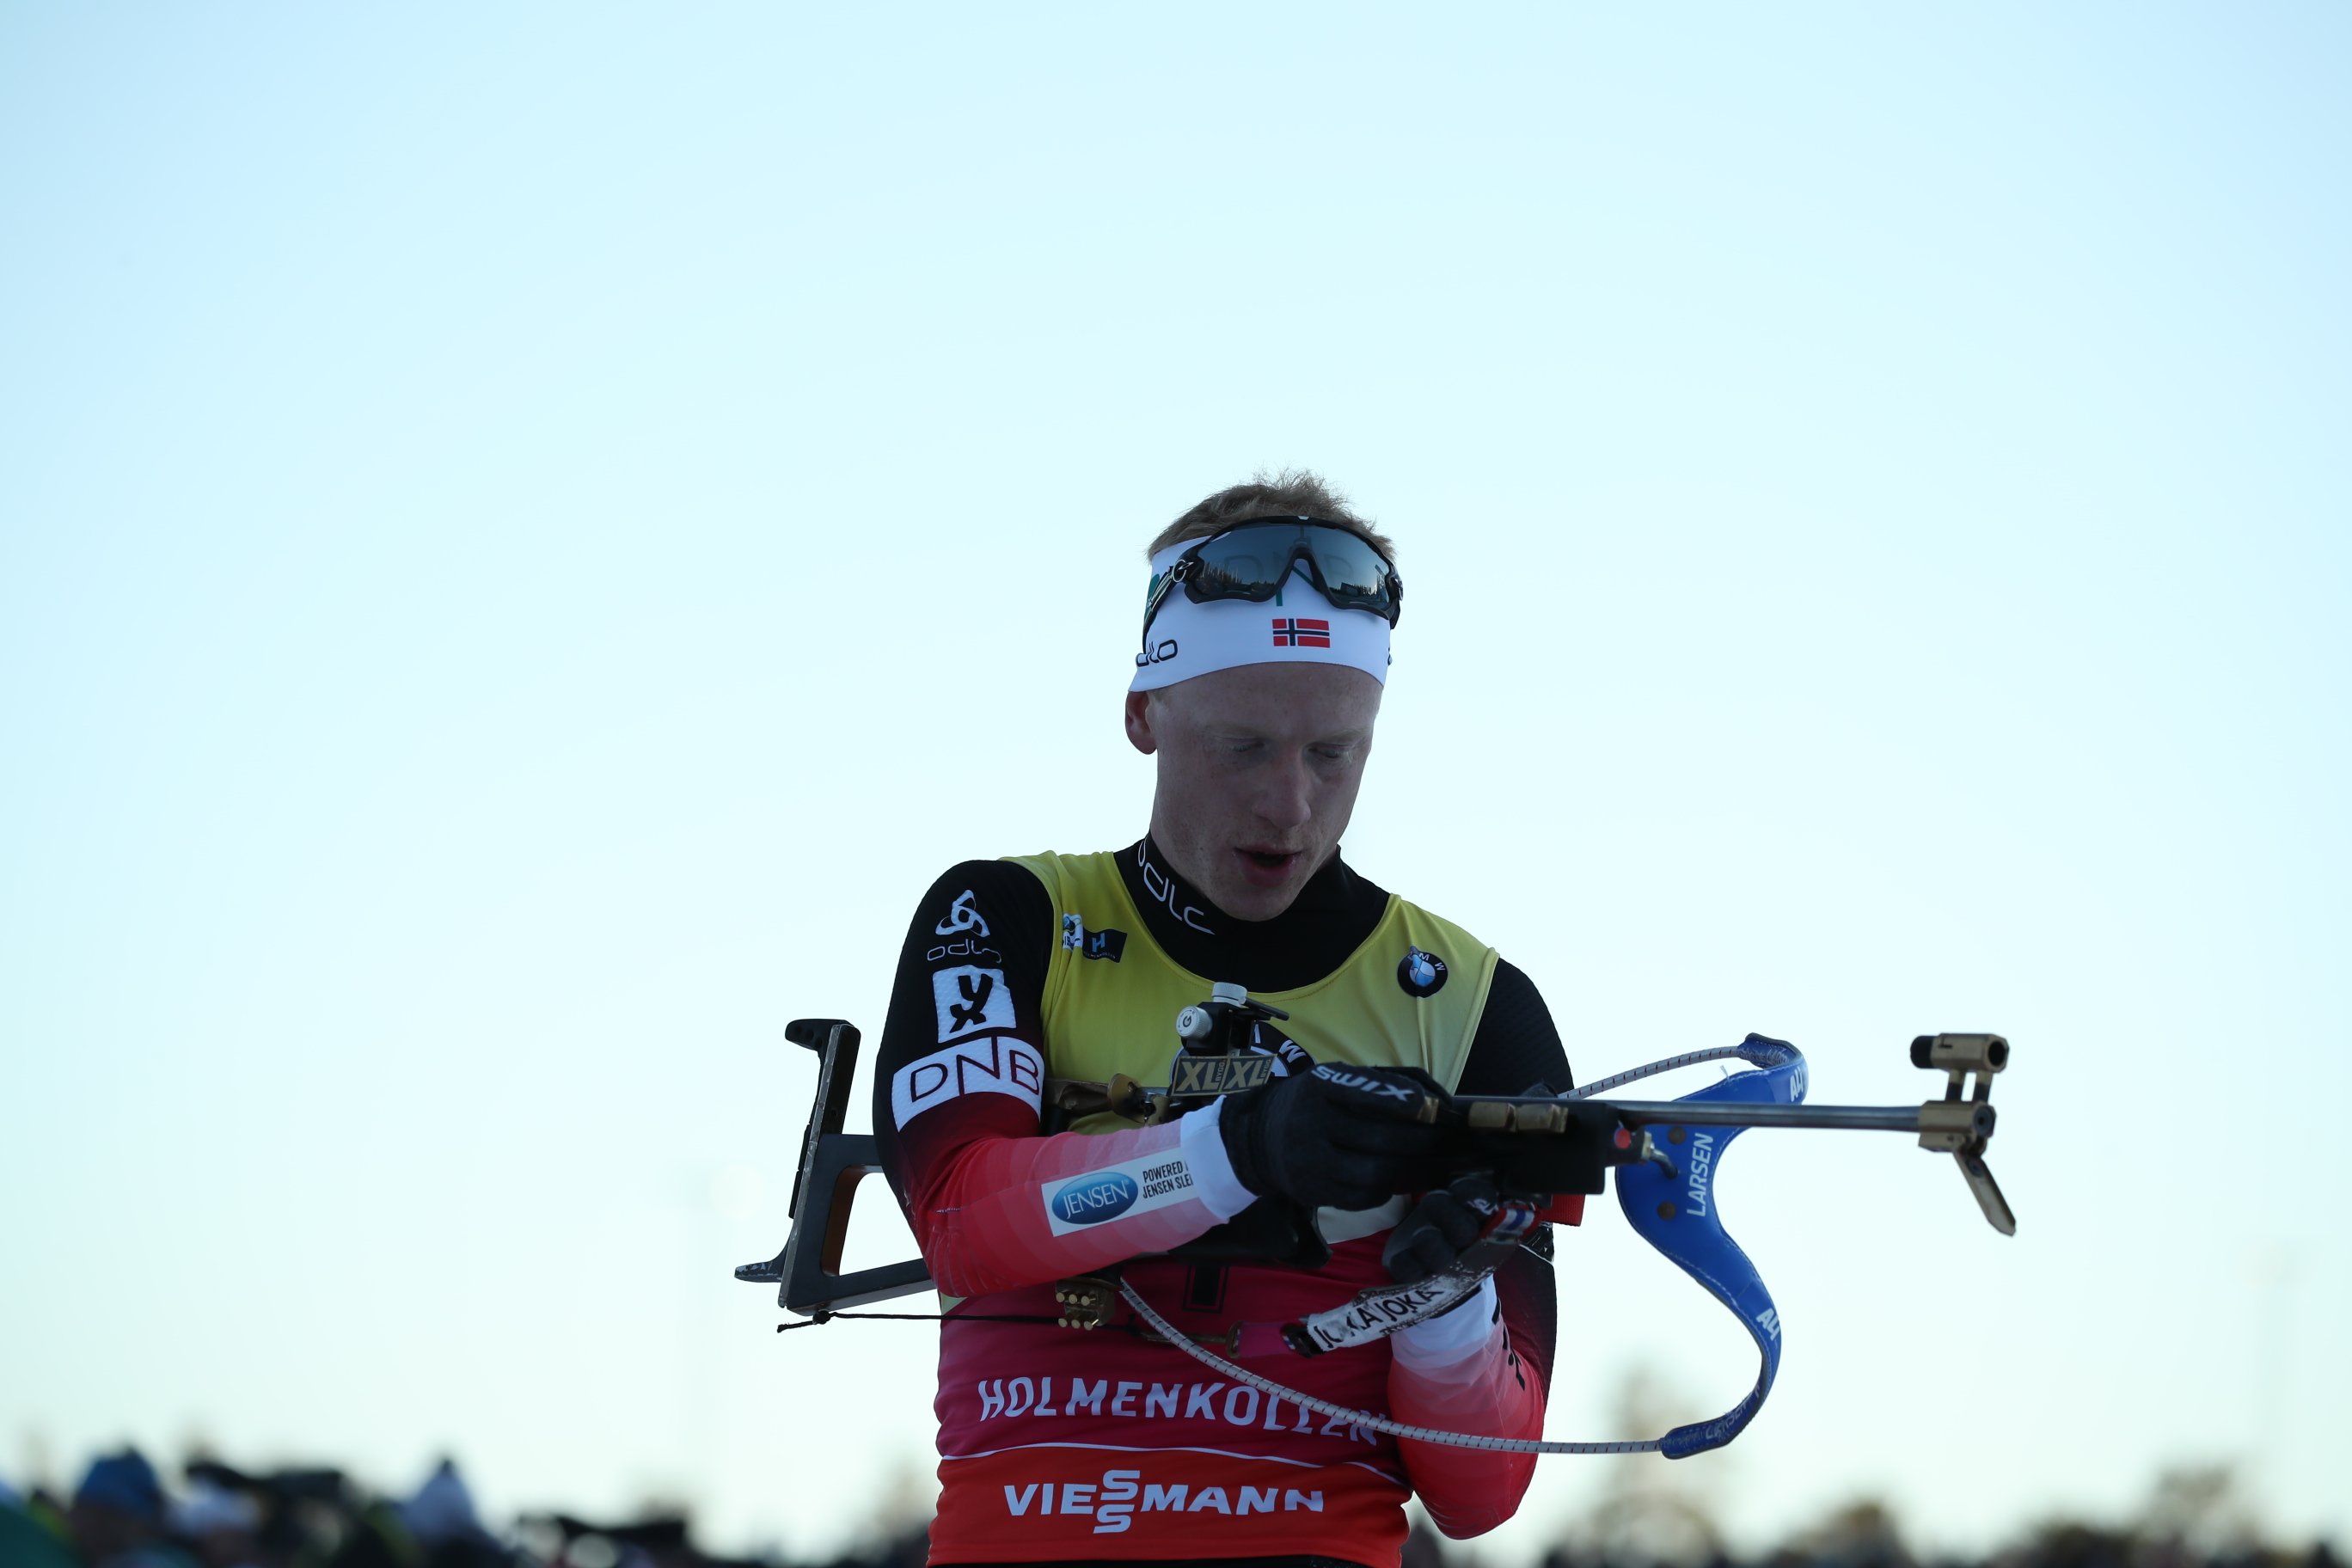 BIATHLON - Johannes Boe, impérial sur la poursuite d’Oslo, a décroché un historique 15e succès en un hiver ! Mieux, il a partagé le podium avec son frère Tarjei Boe.